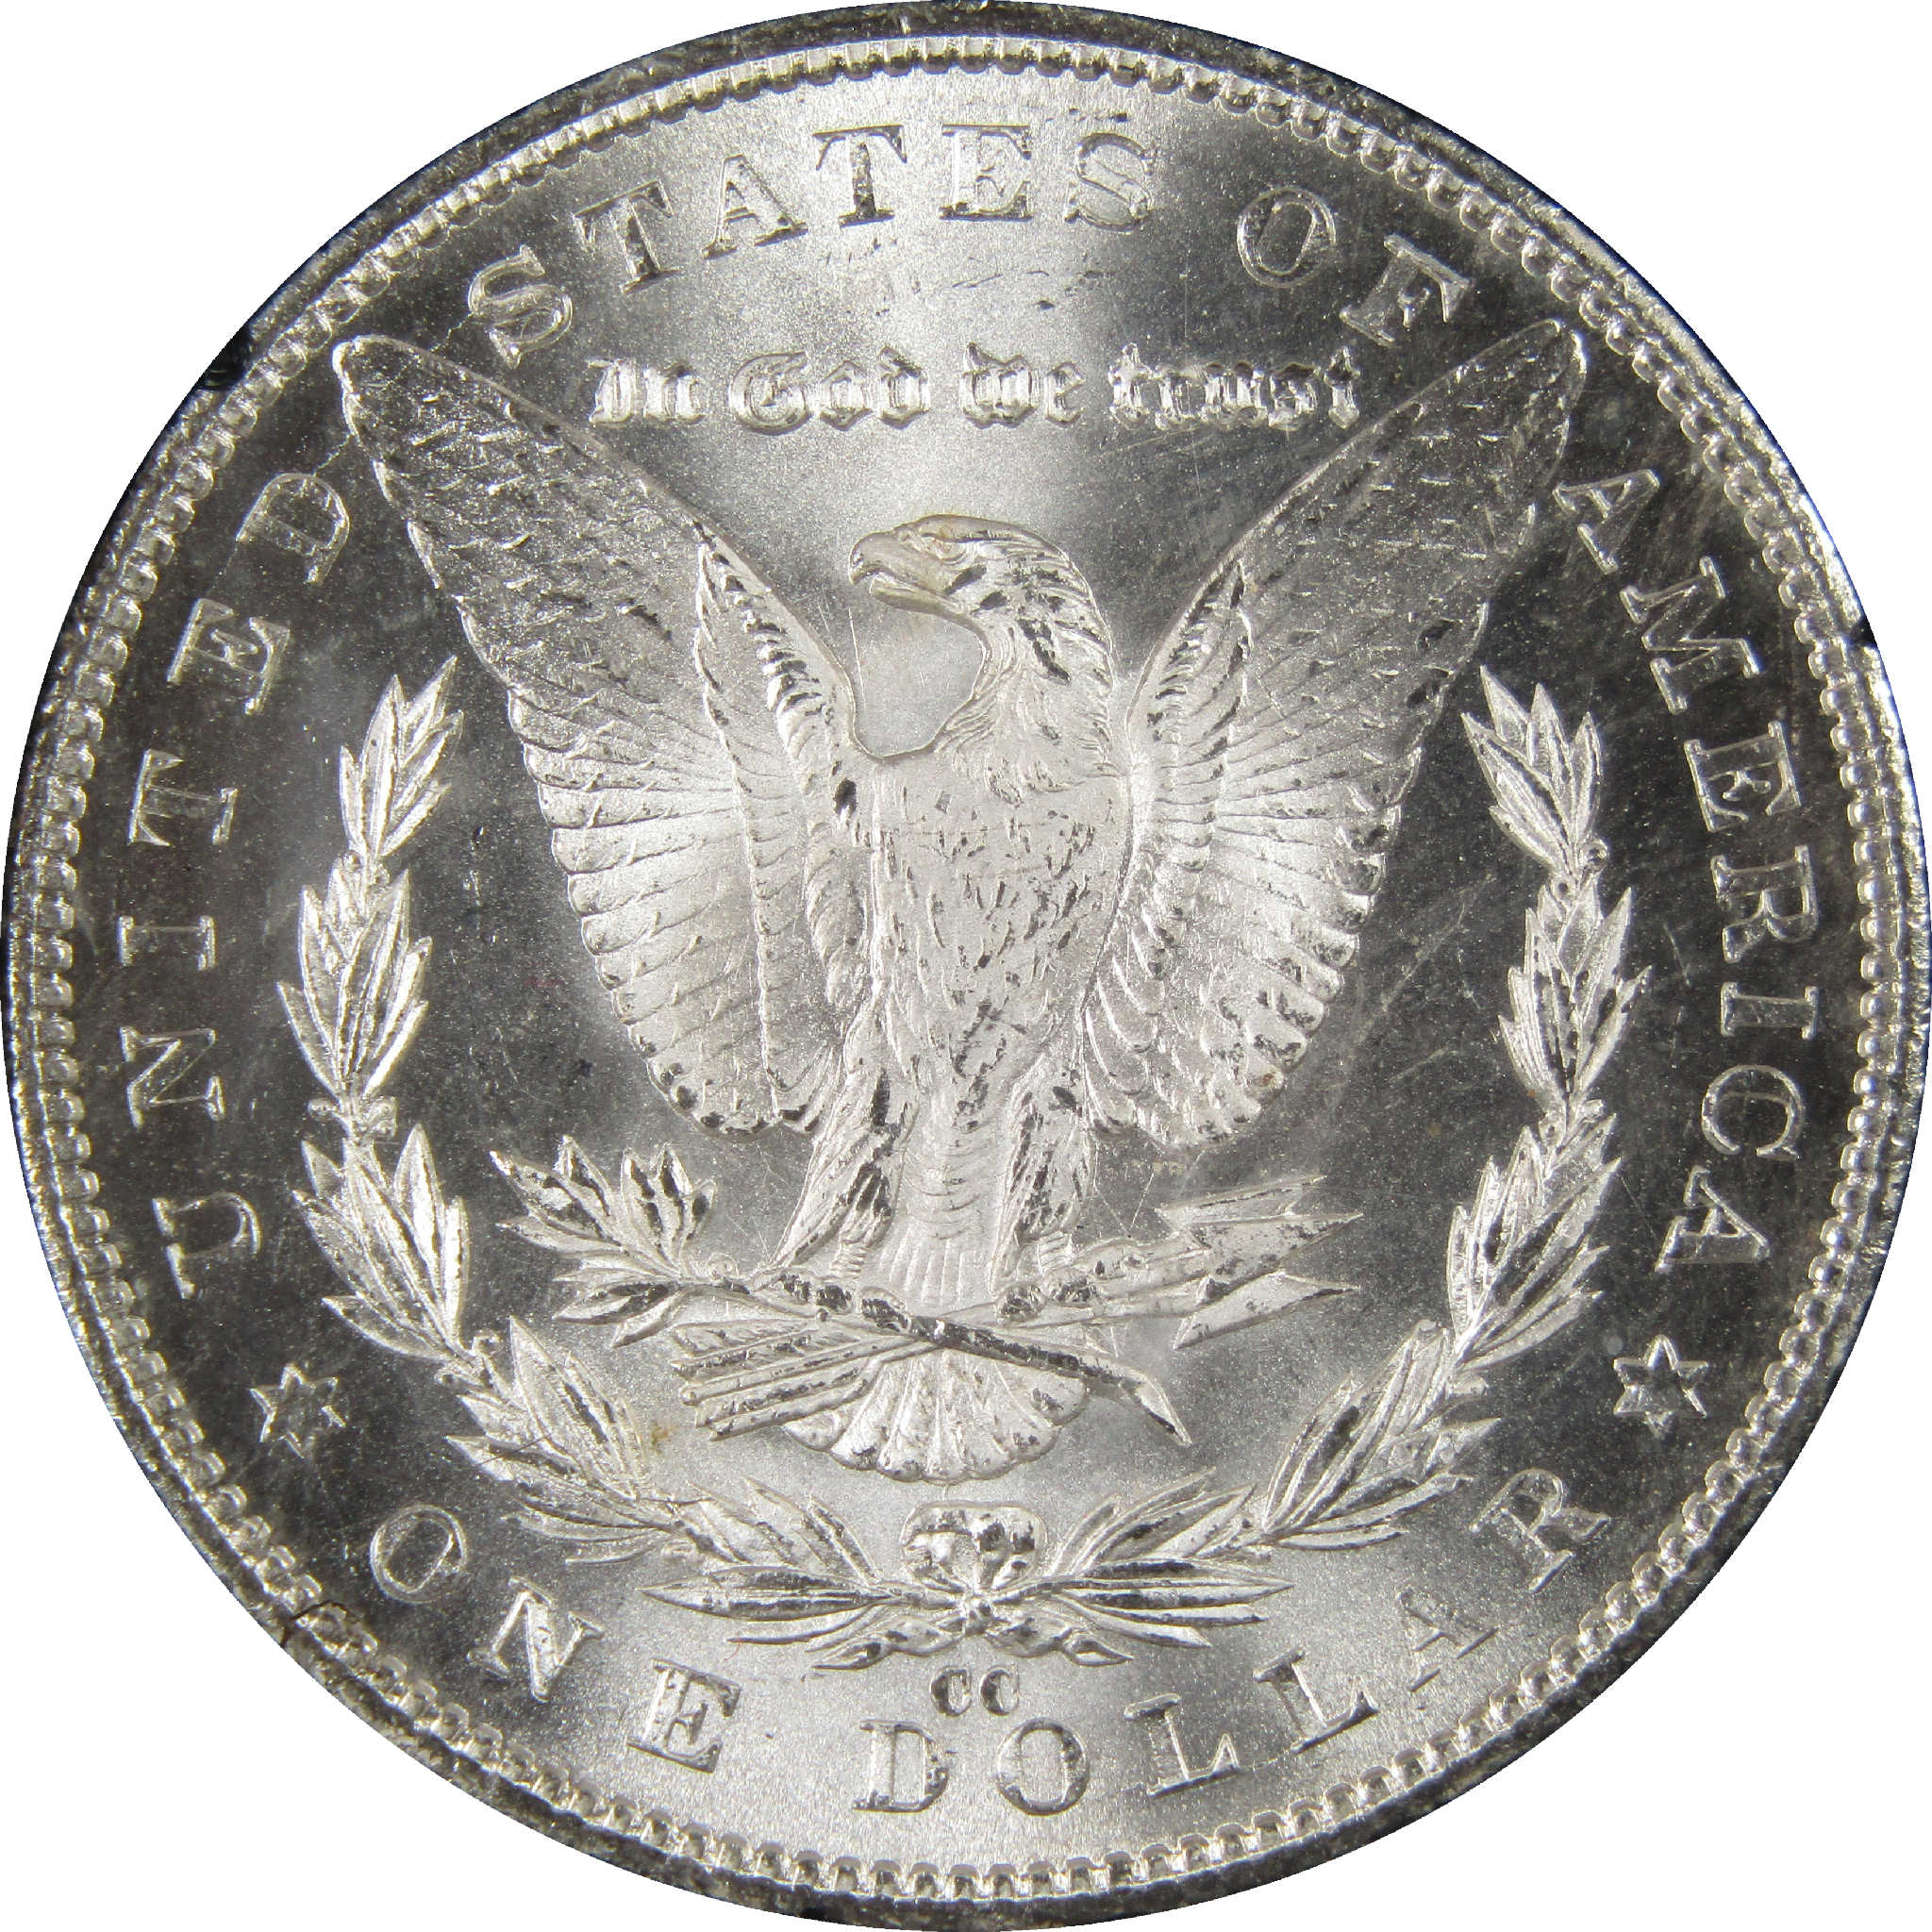 1884 CC GSA Morgan Dollar BU Uncirculated Silver $1 Coin SKU:I11494 - Morgan coin - Morgan silver dollar - Morgan silver dollar for sale - Profile Coins &amp; Collectibles